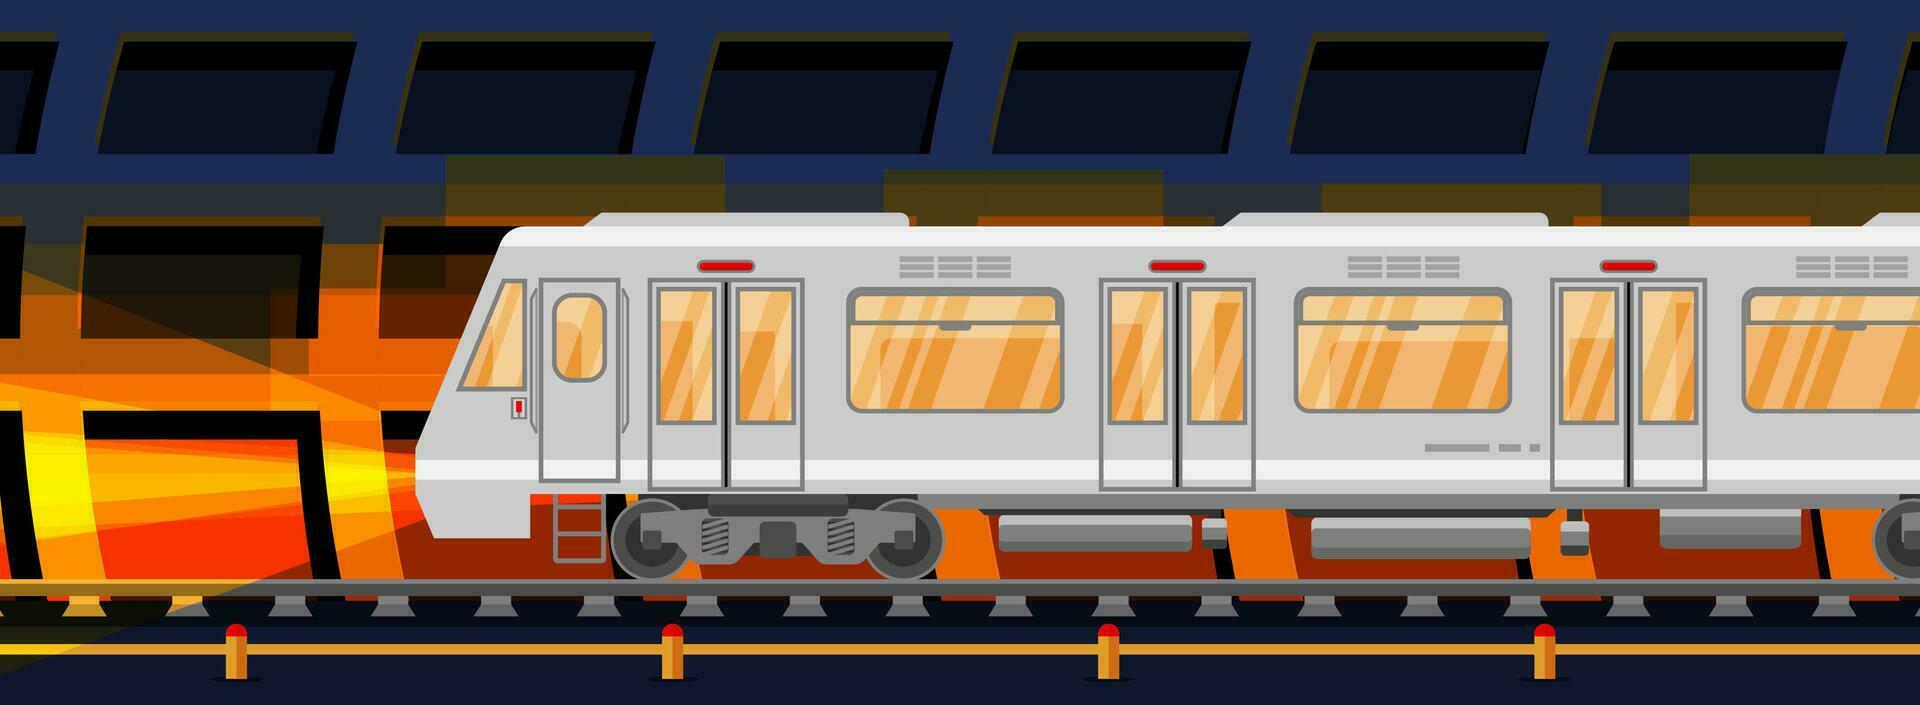 gedetailleerd ondergronds trein auto in tunnel. metro spoorweg auto met lichten. modern stedelijk metro. passagier uitdrukken spoorweg. spoorweg openbaar vervoer. snel vervoer. vlak vector illustratie